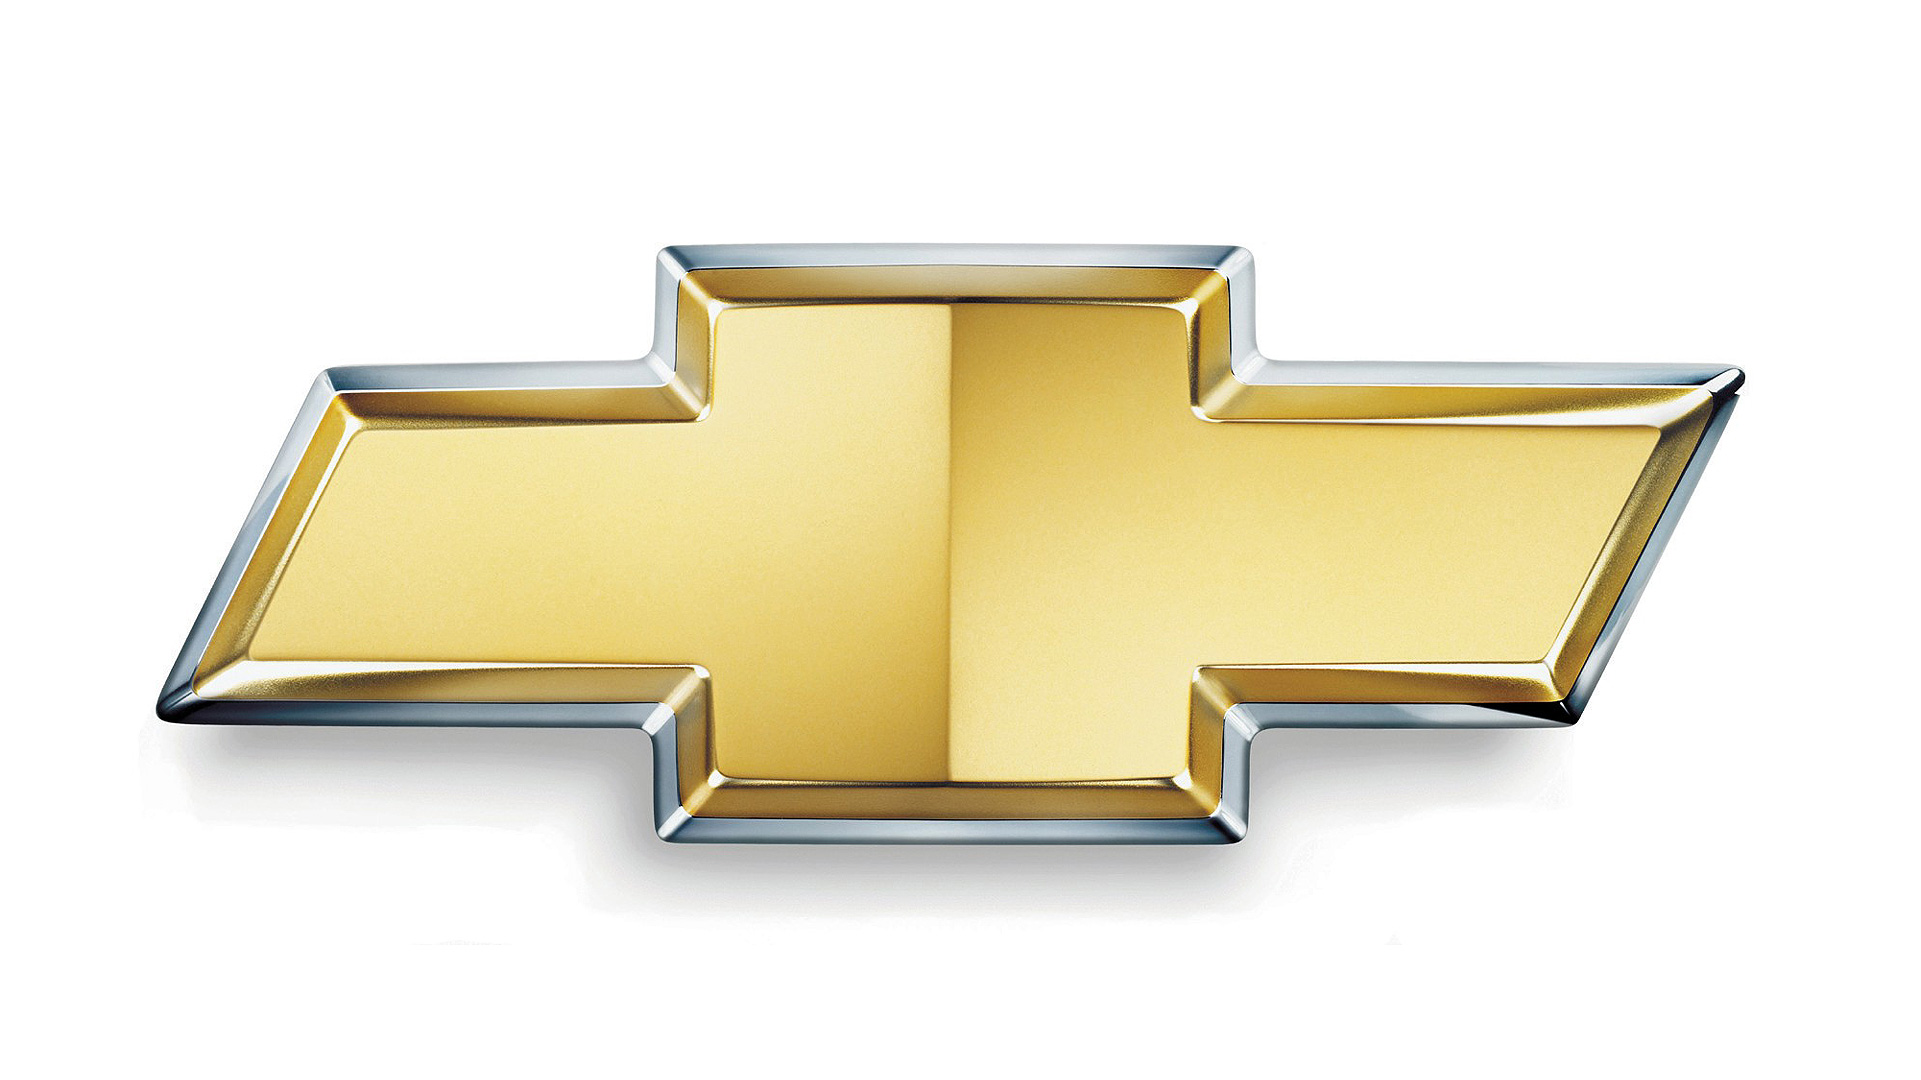 Chevrolet Logo (2004) 1920x10